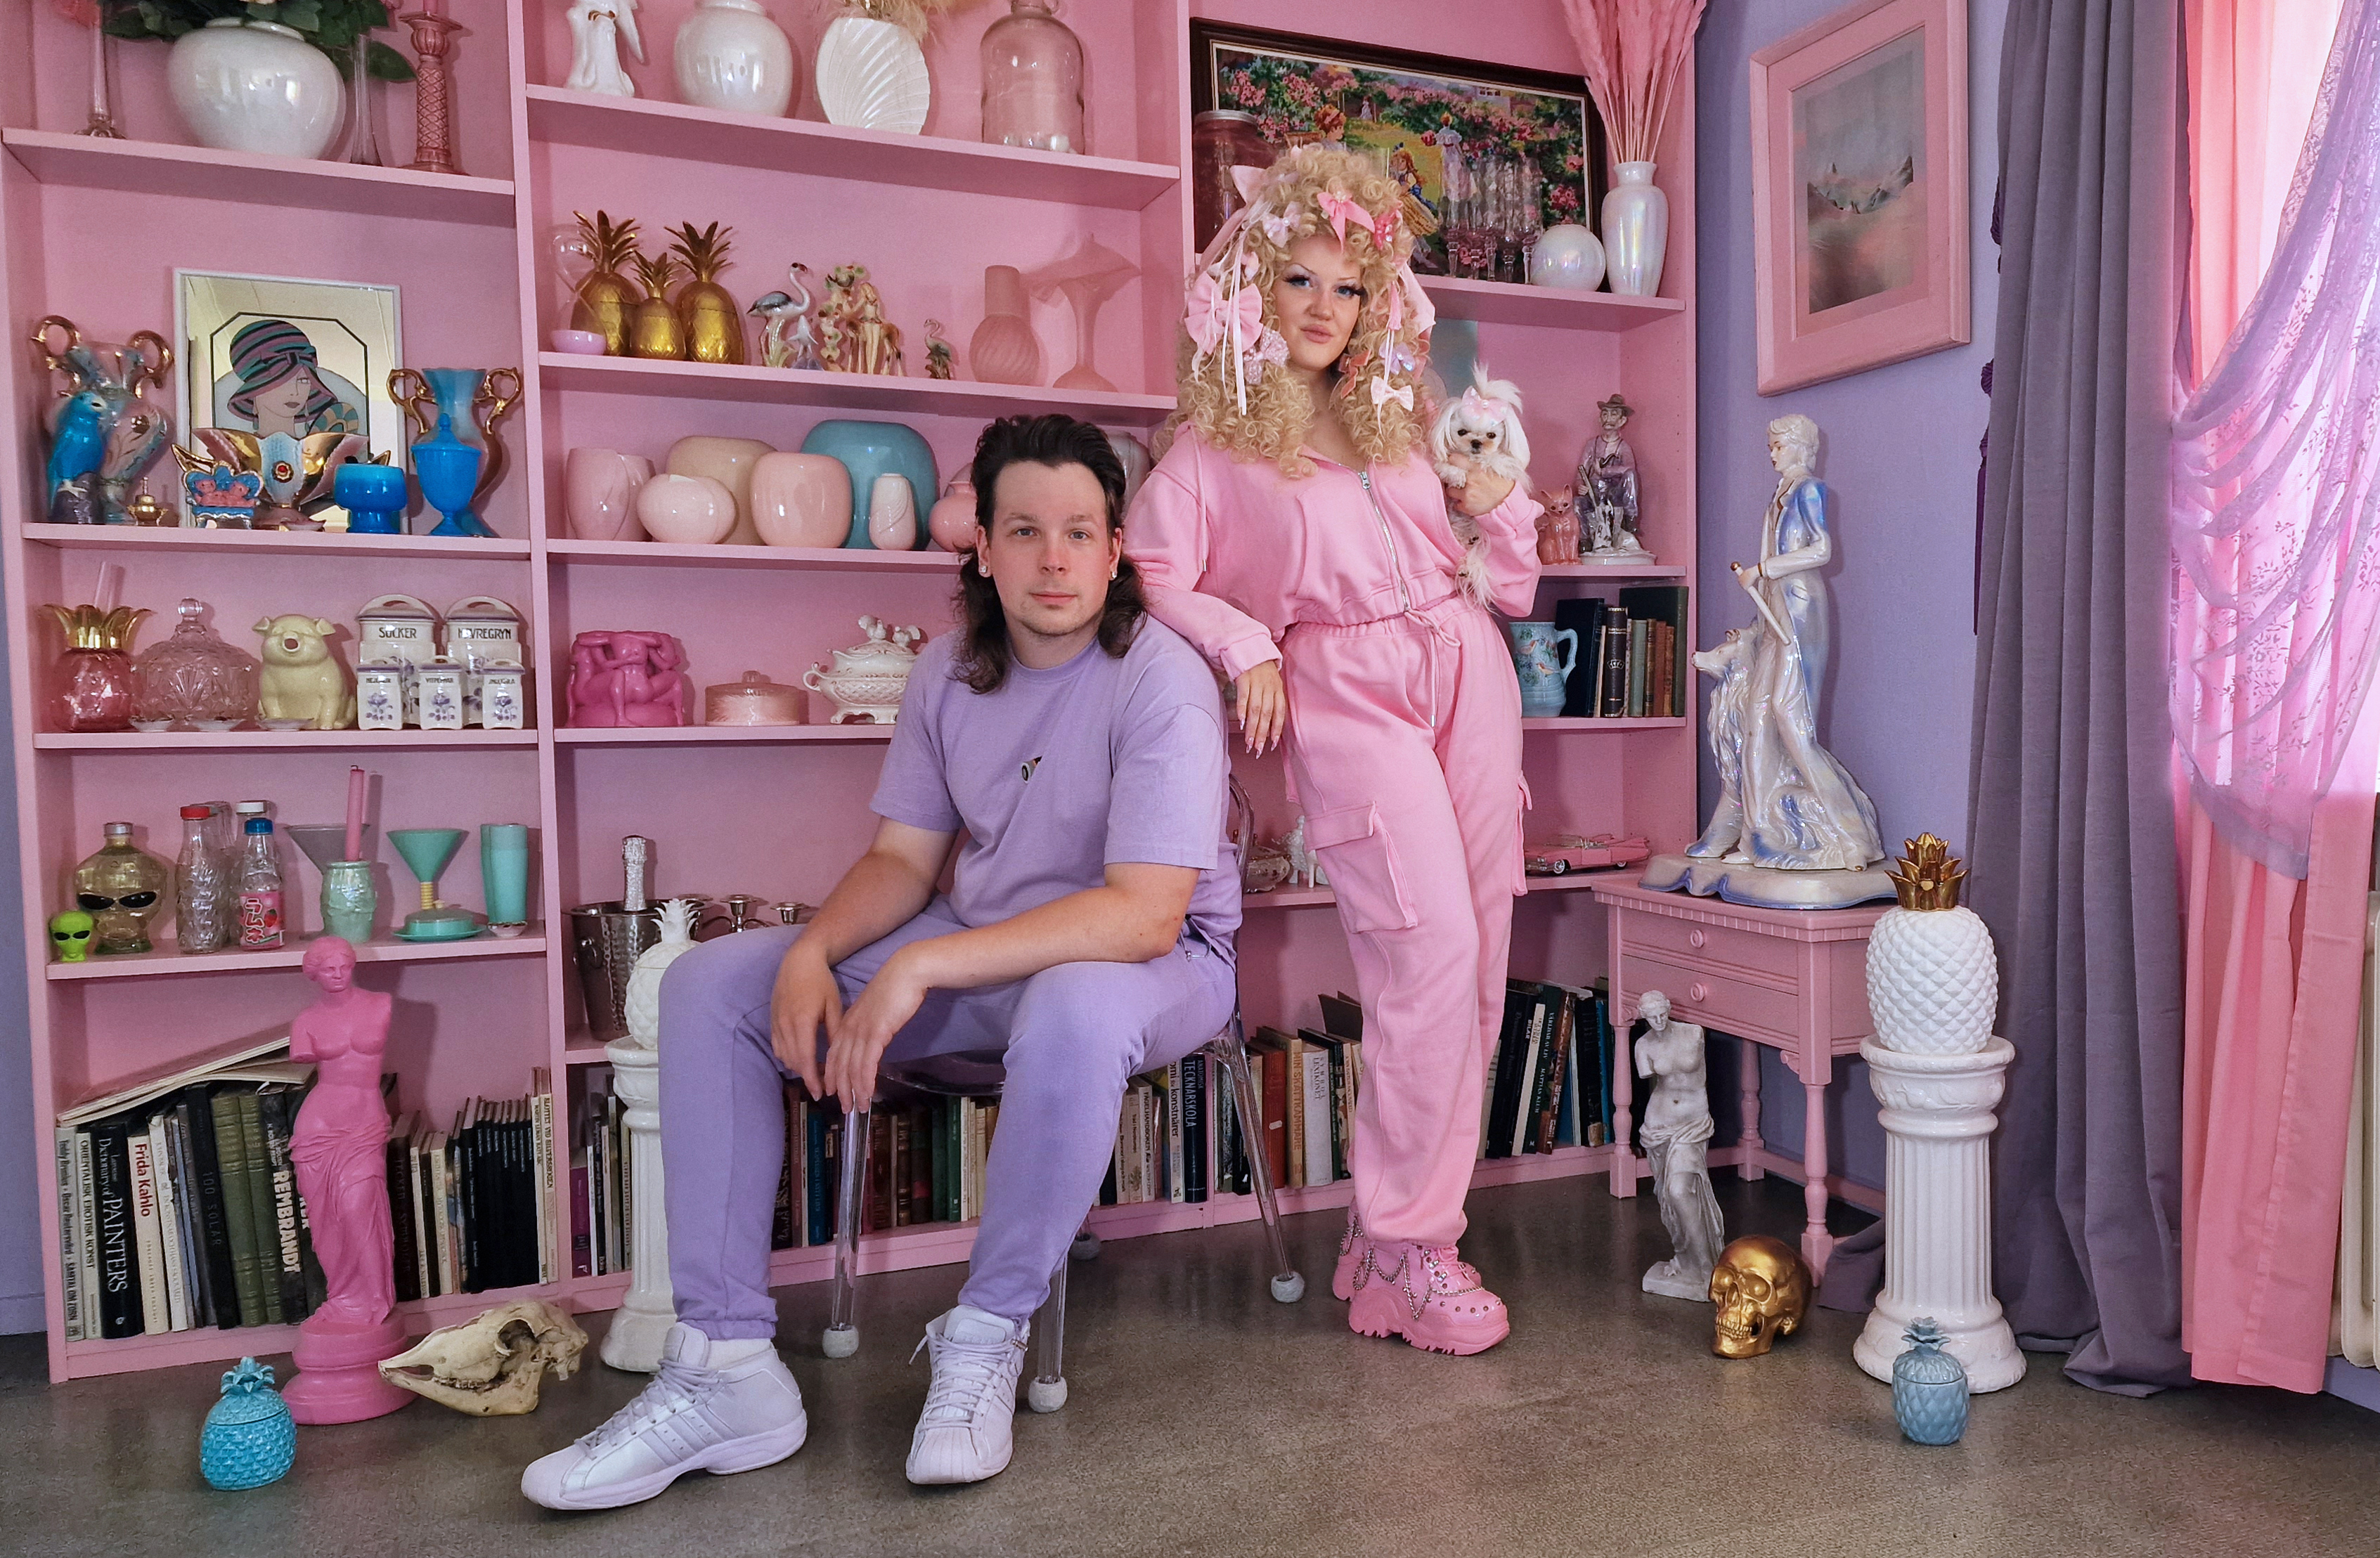 Två personer klädda i rosa och lila färger, i ett rum med rosa och lila möbler, väggar och gardiner.